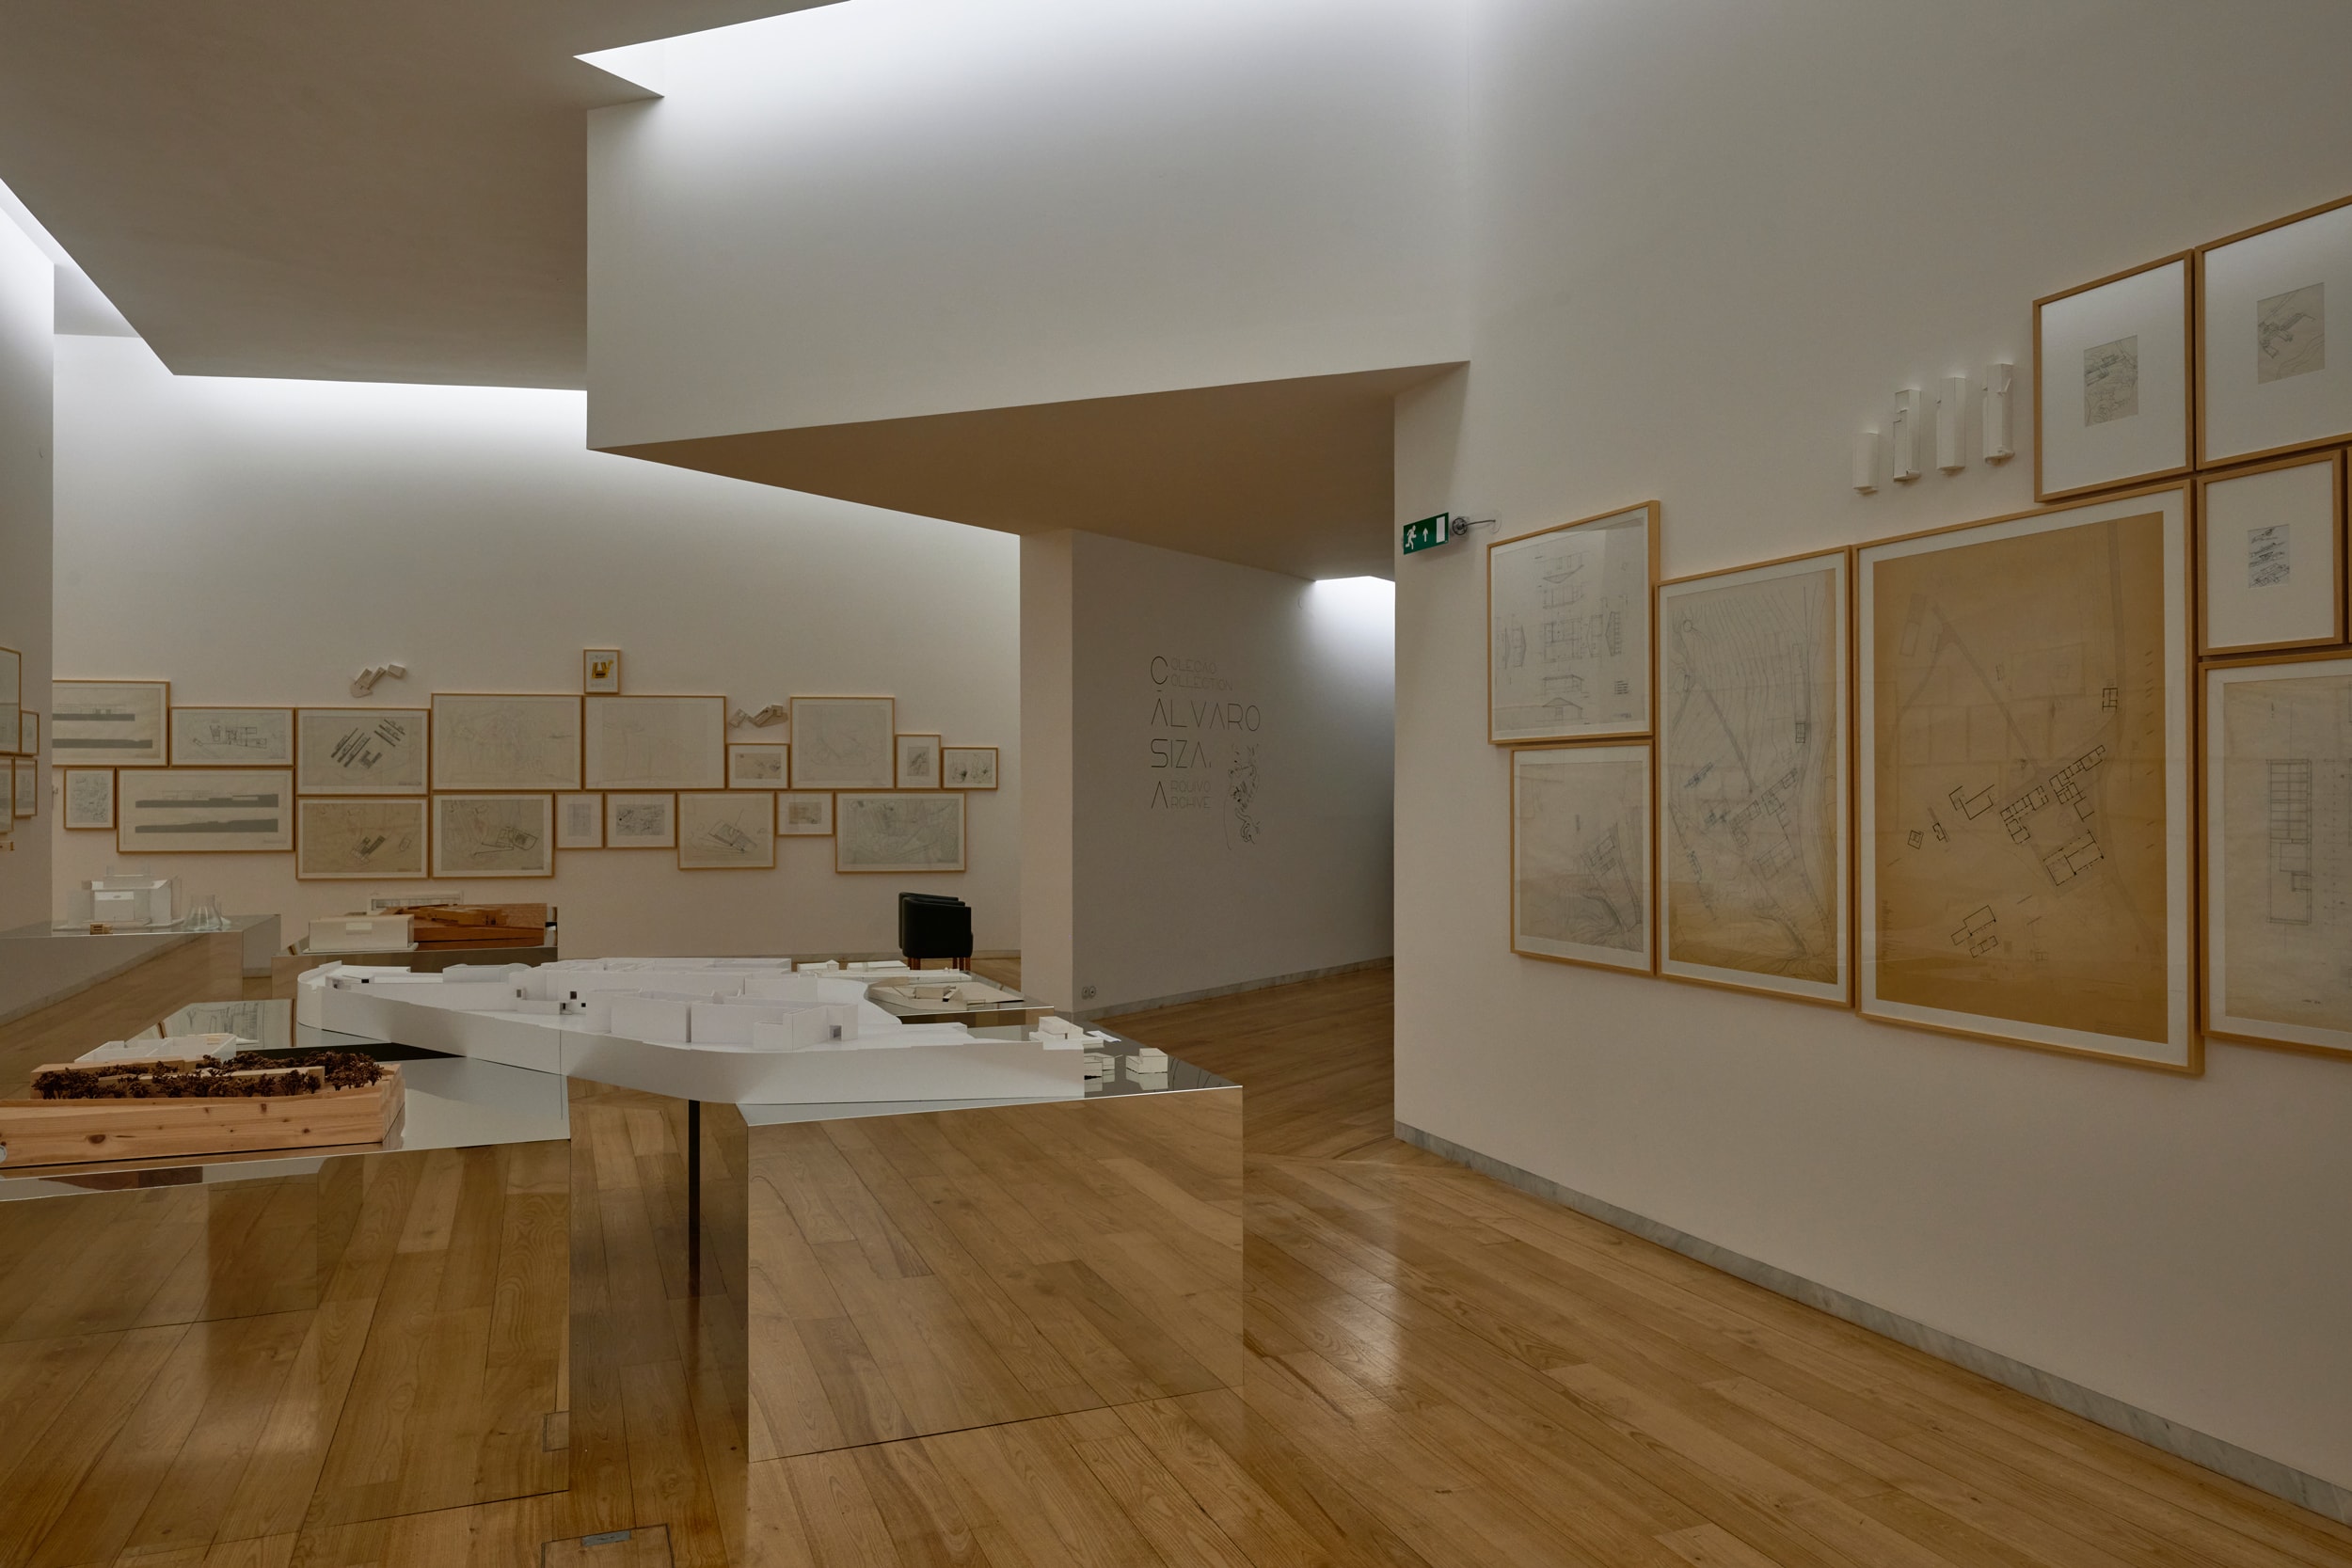 serralves museum alvaro siza wing porto portugal anagrams exhibition casa collection